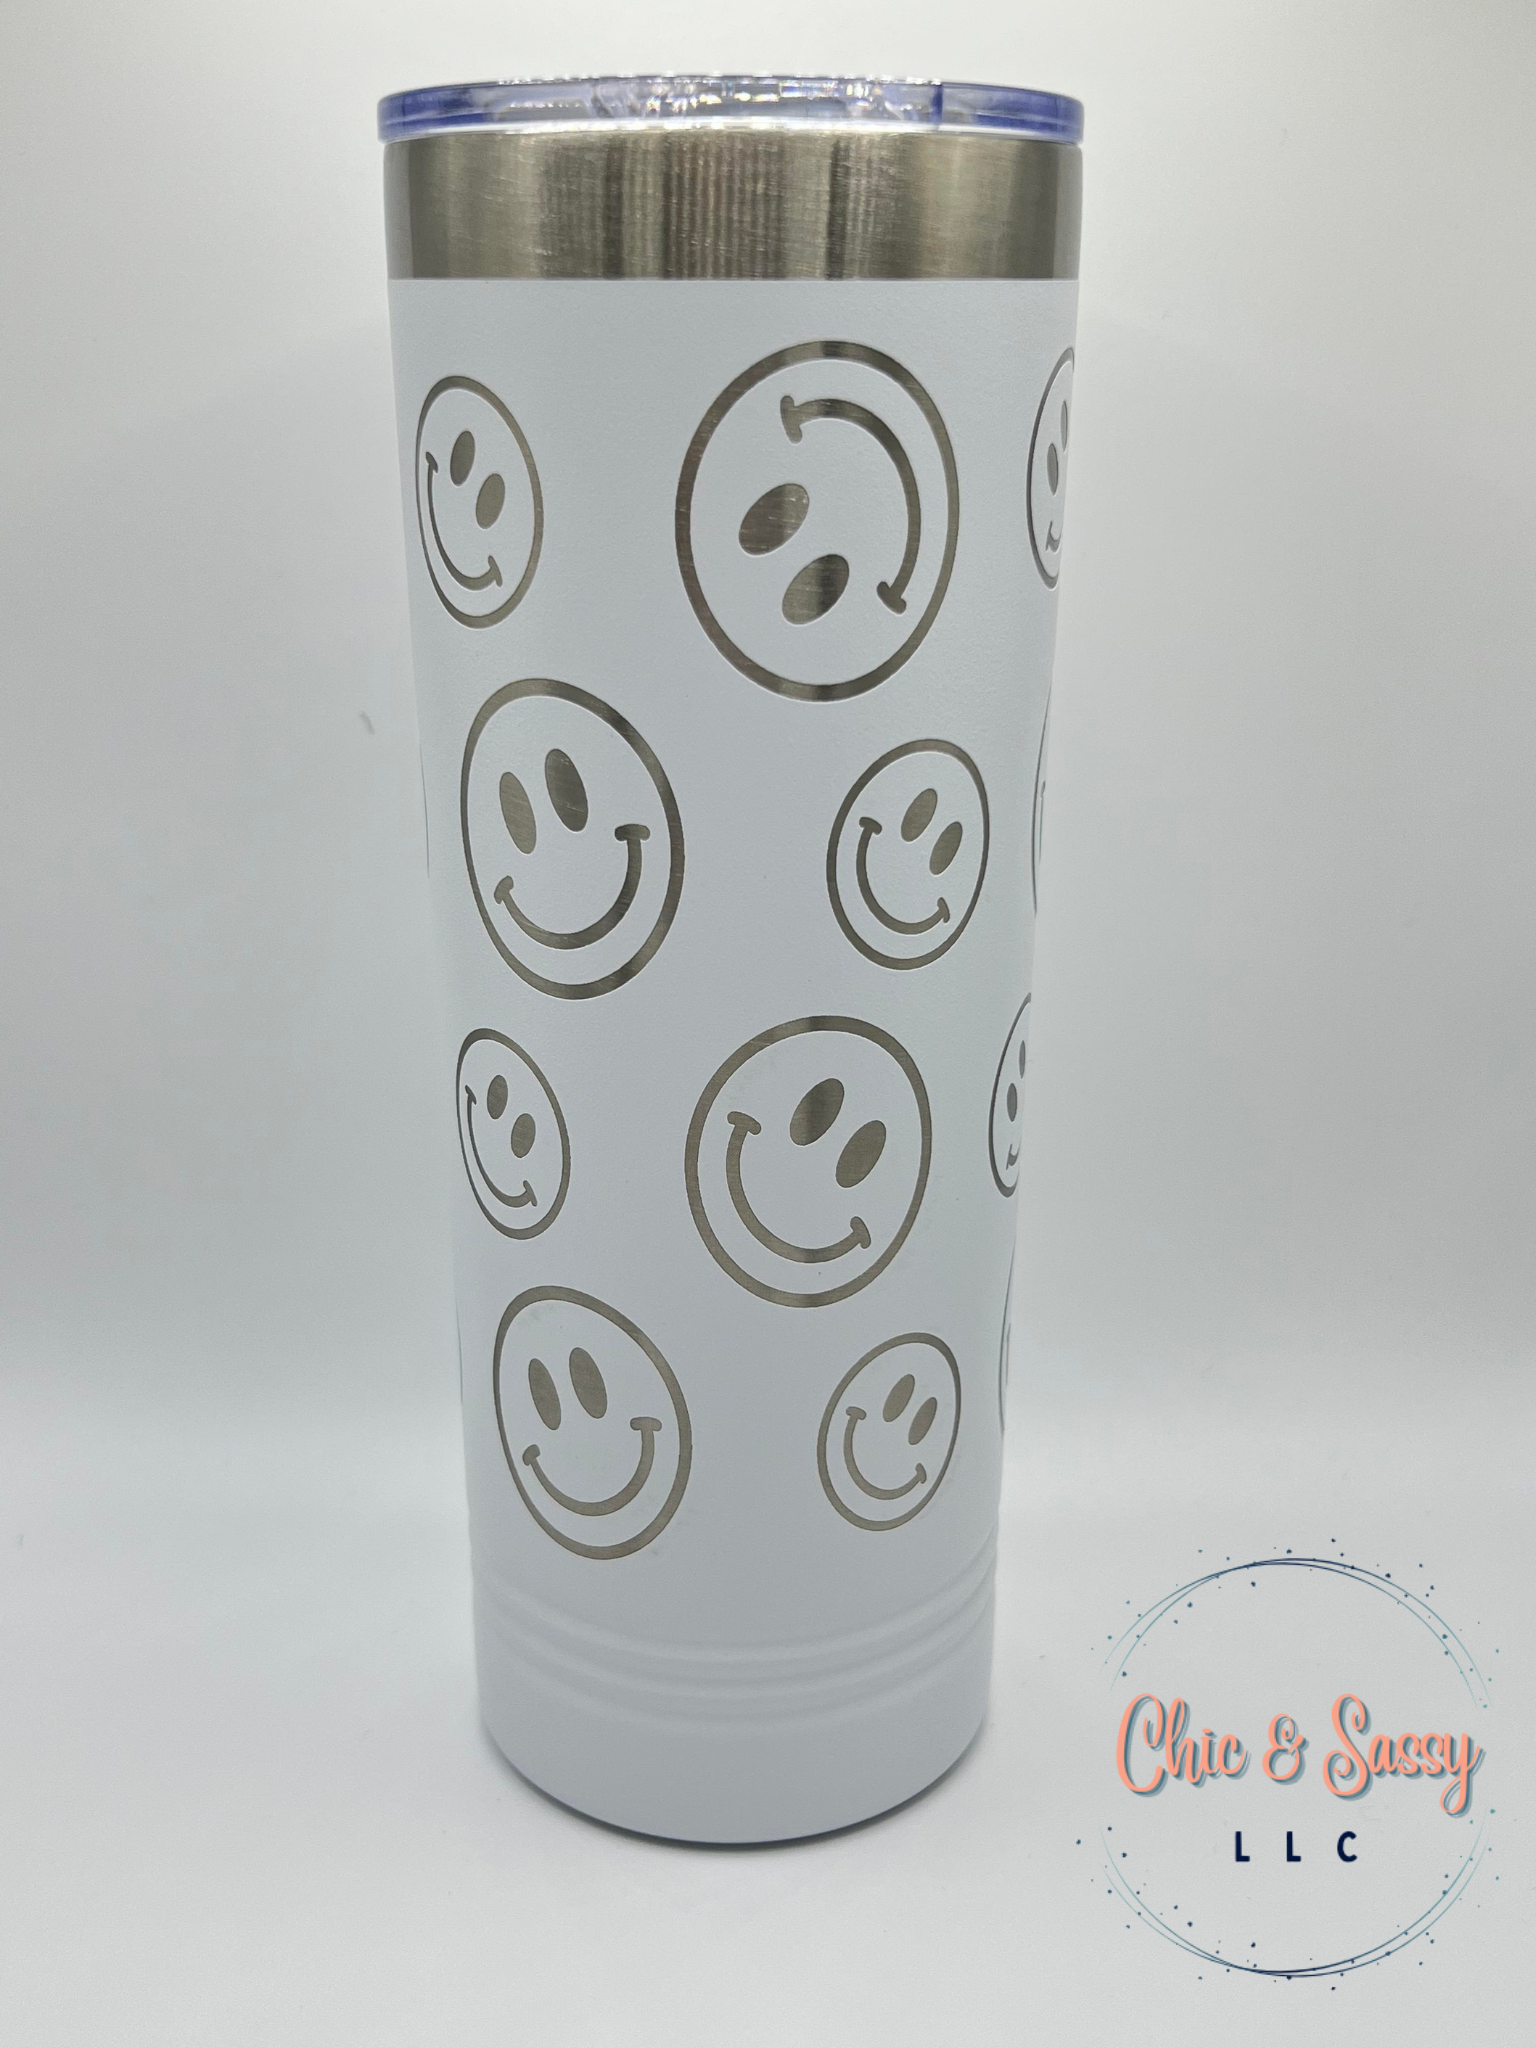 Smiley Face, Smiley, Smiley Face Cup, Smiley Face Tumbler, Tumbler,  Reusable Cup, Black Tumbler, White Tumbler, Tumbler Gifts, Cup Gifts 